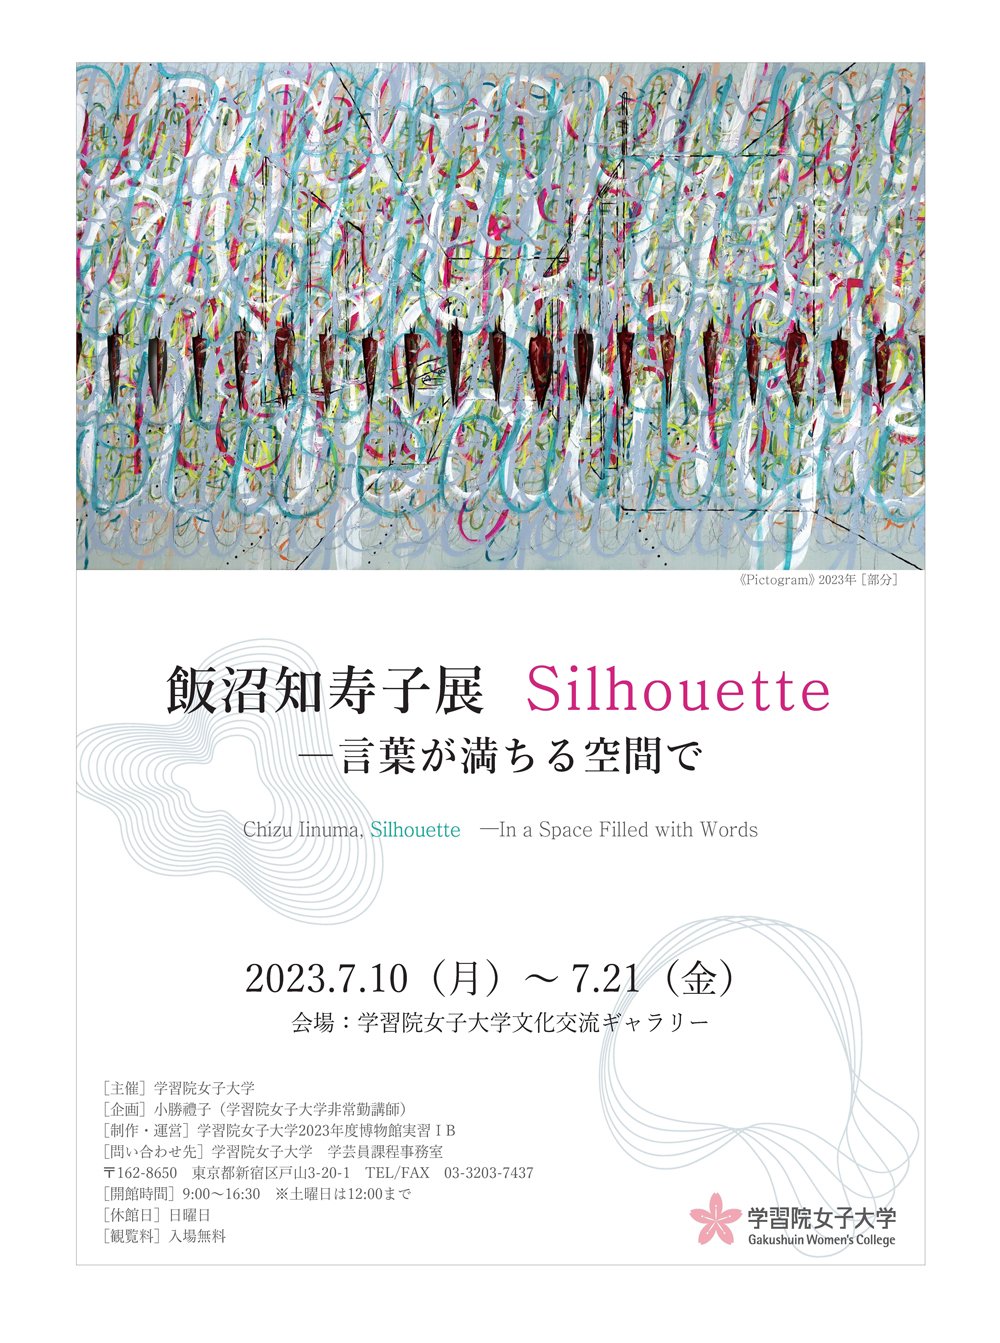 20230703_silhouette-poster.jpg